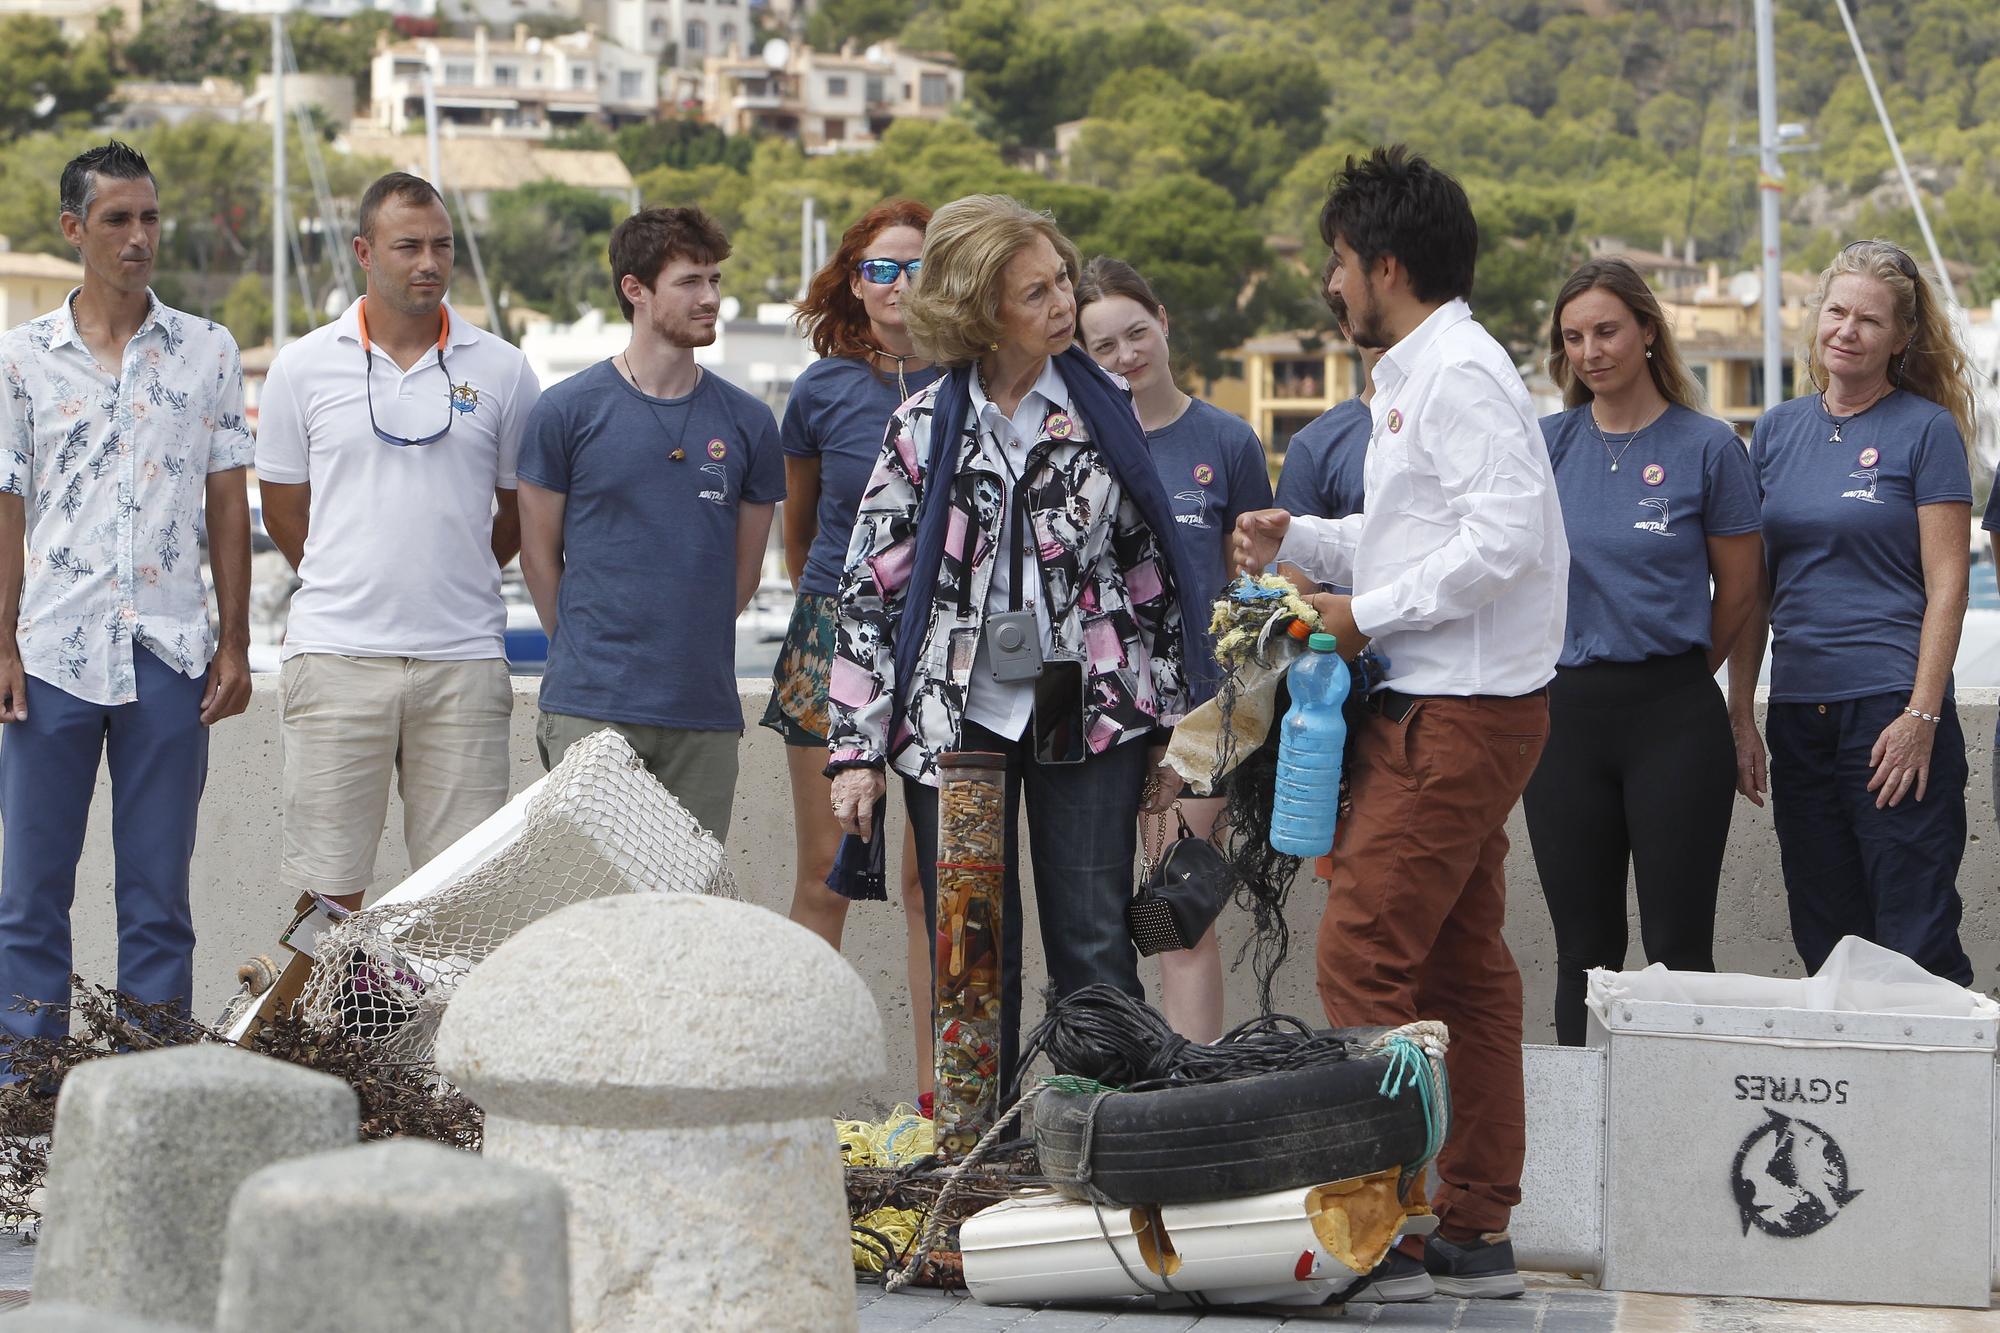 La Reina Sofía participa en la recogida de residuos marinos en Mallorca